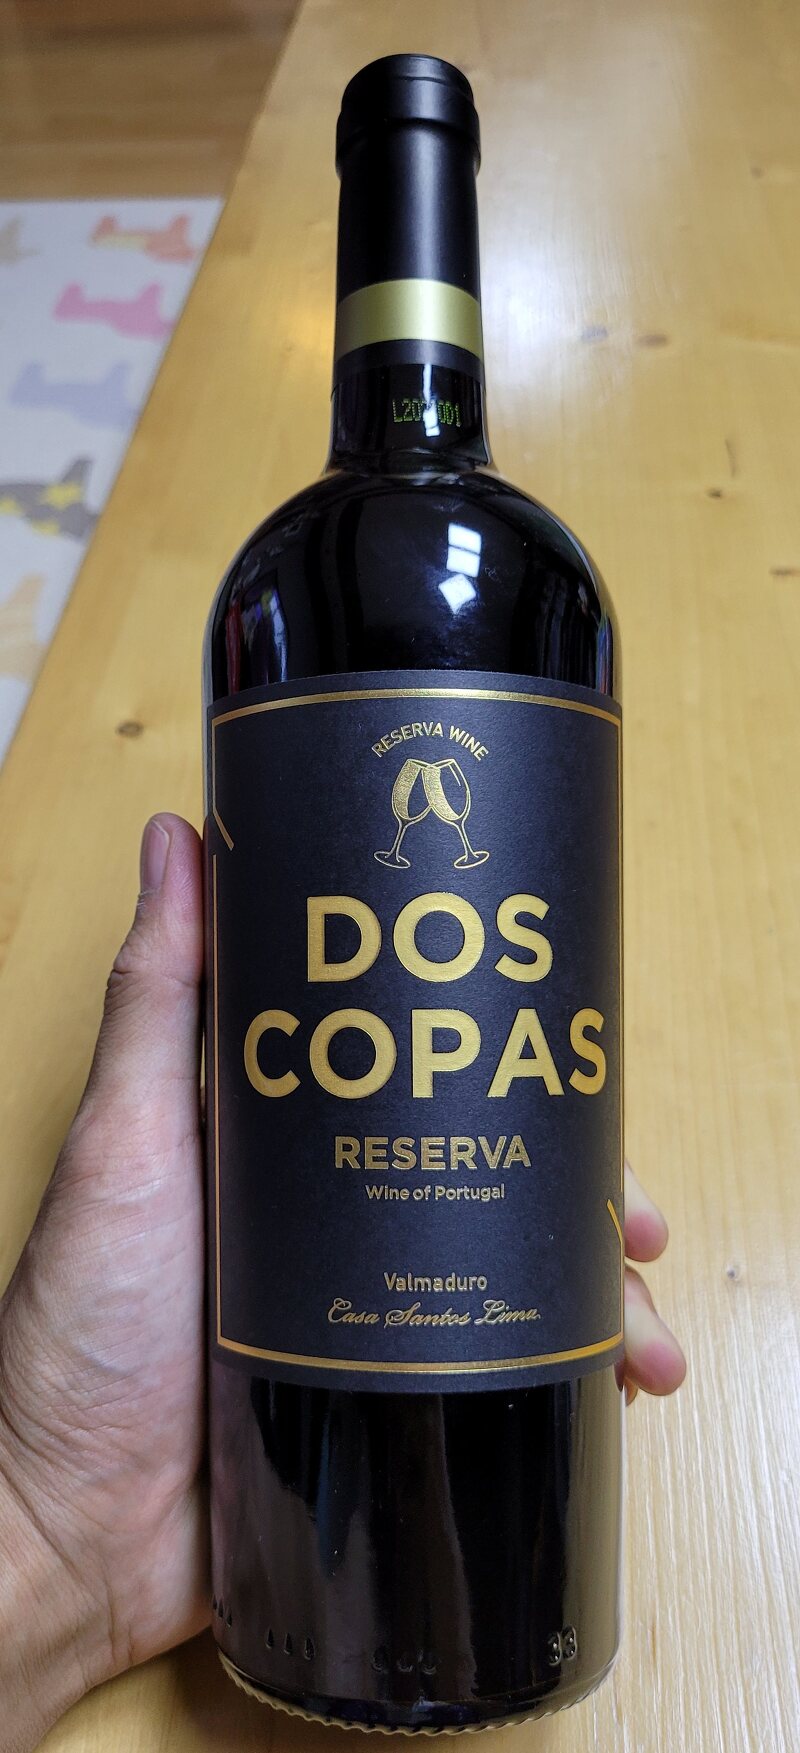 가성비 이마트 와인, 도스 코파스 리제르바 2017(Dos Copas Reserva 2017)